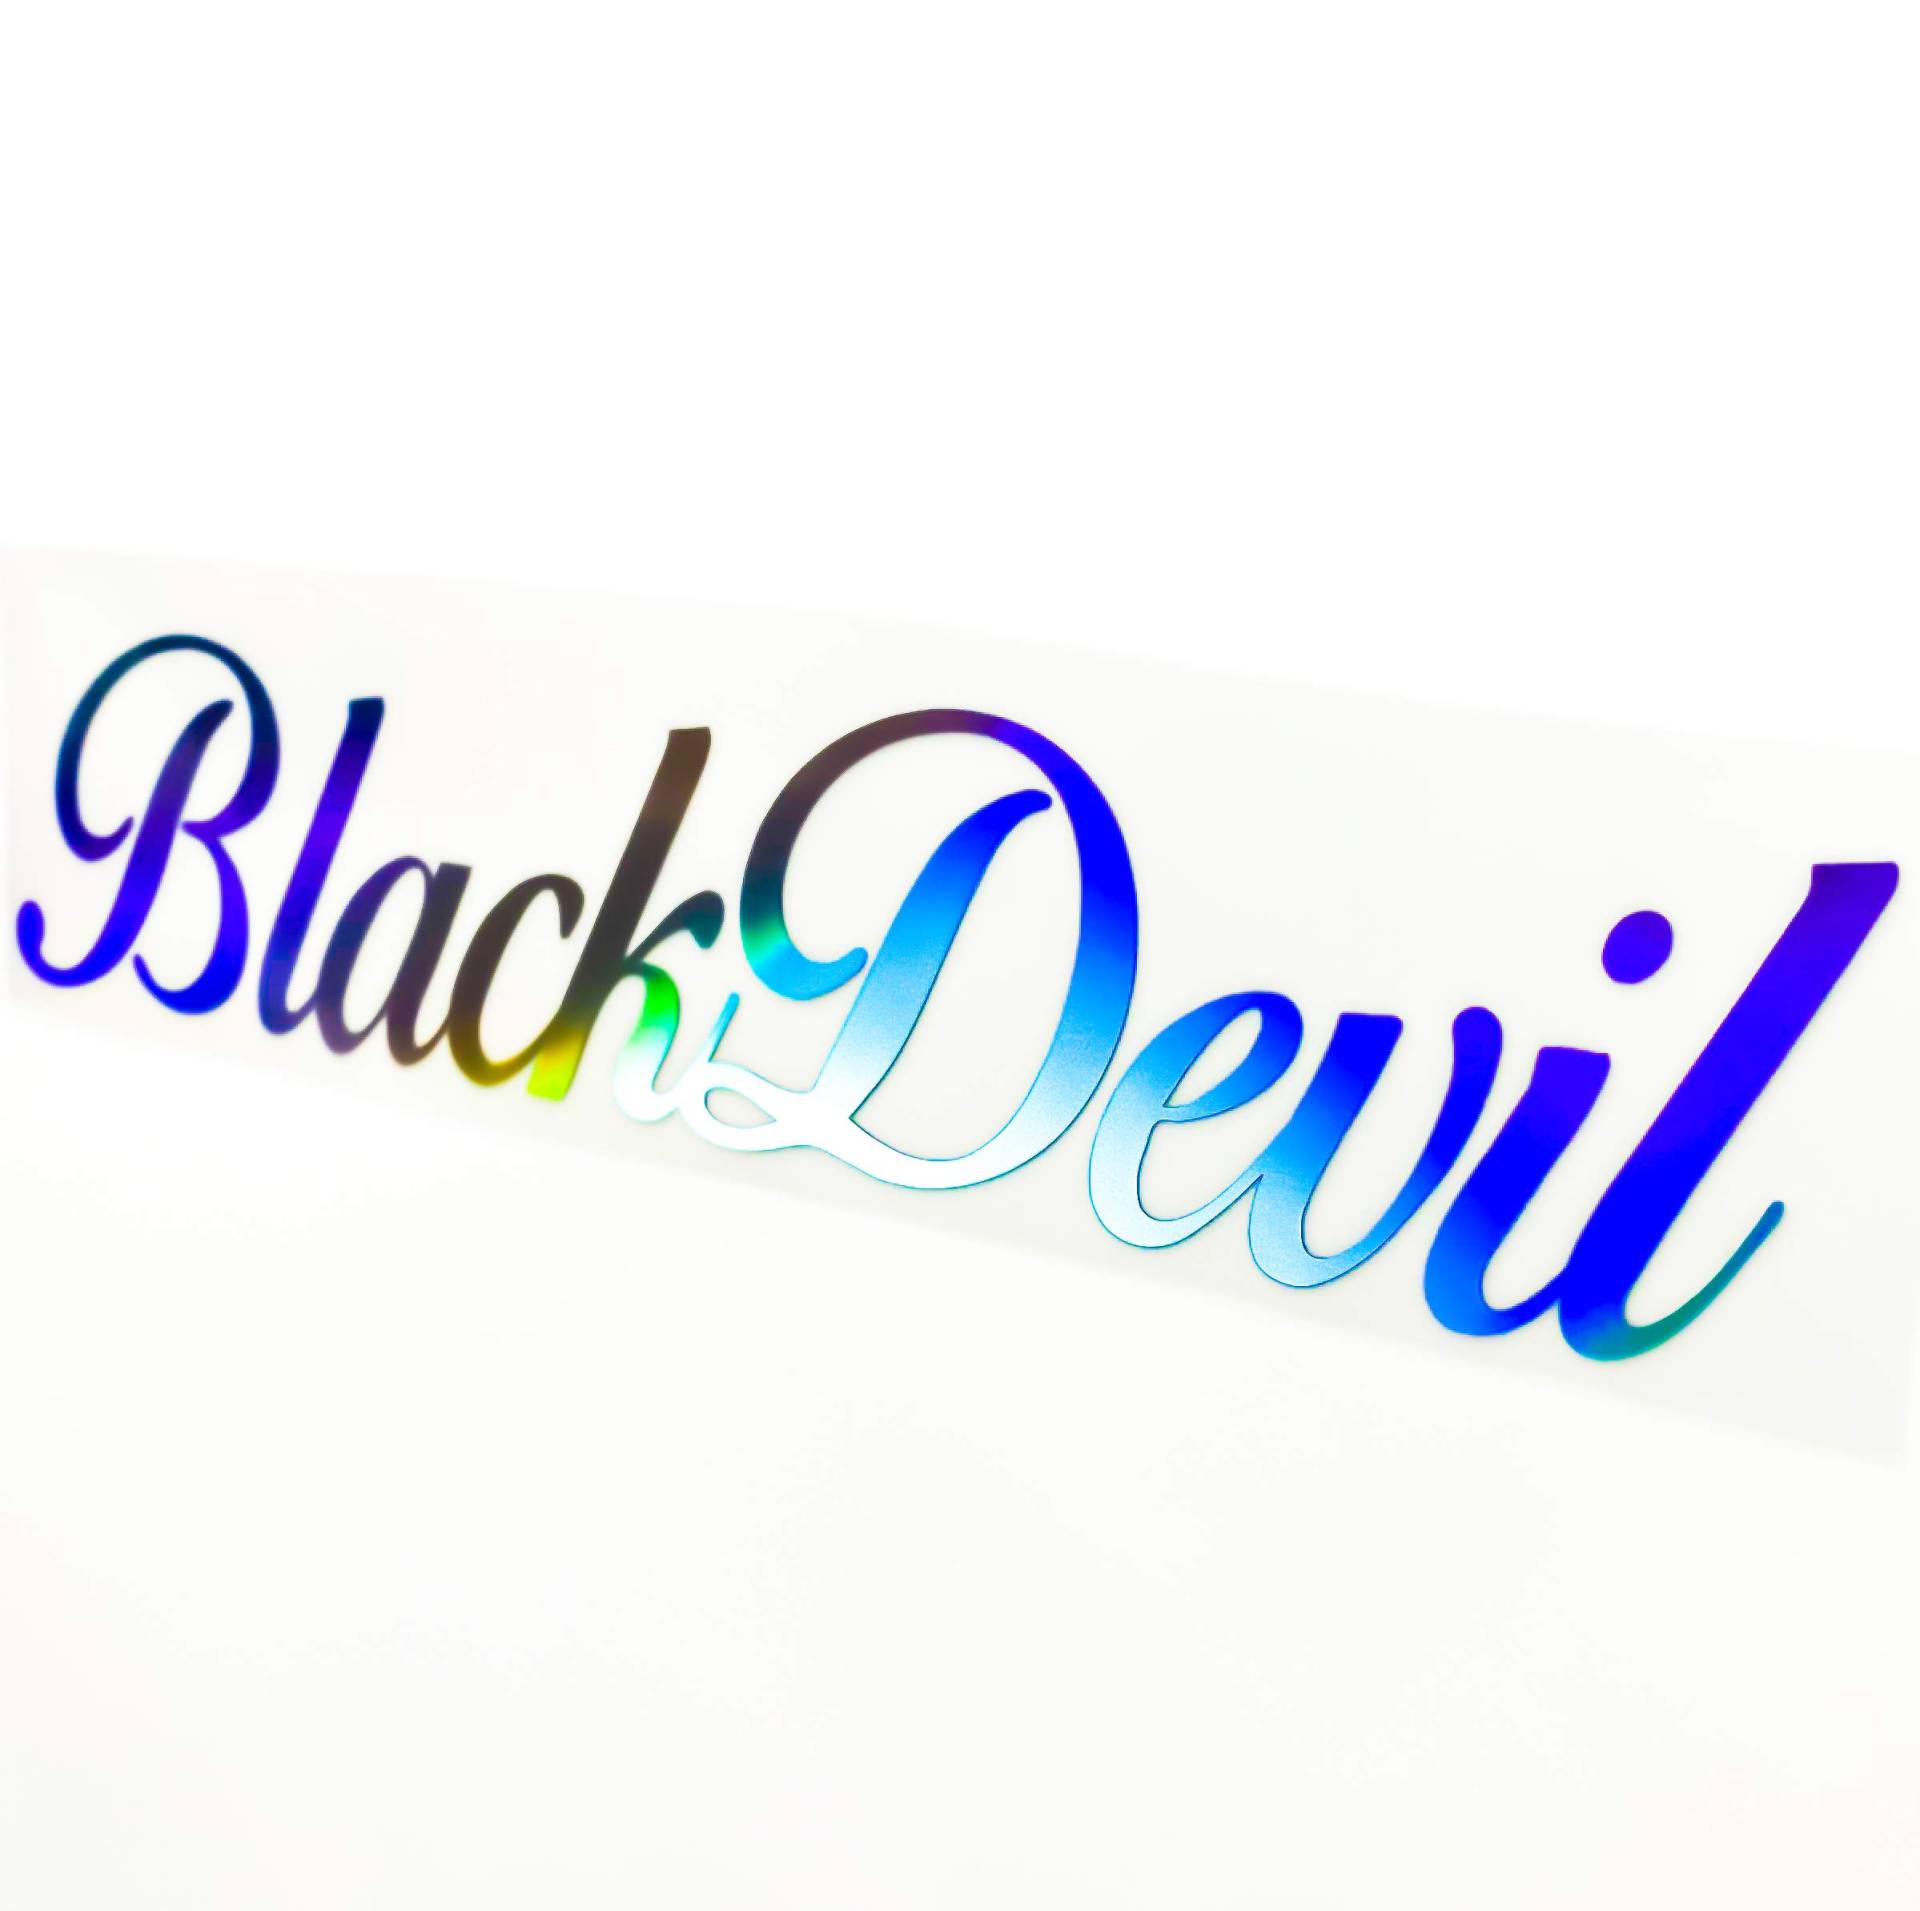 Black Devil Car Decal Hologramm Sticker Holo Slick Oil Autoscheibenaufkleber Autodekor Aufkleber Seitenschweller Sticker von 1A Style Sticker